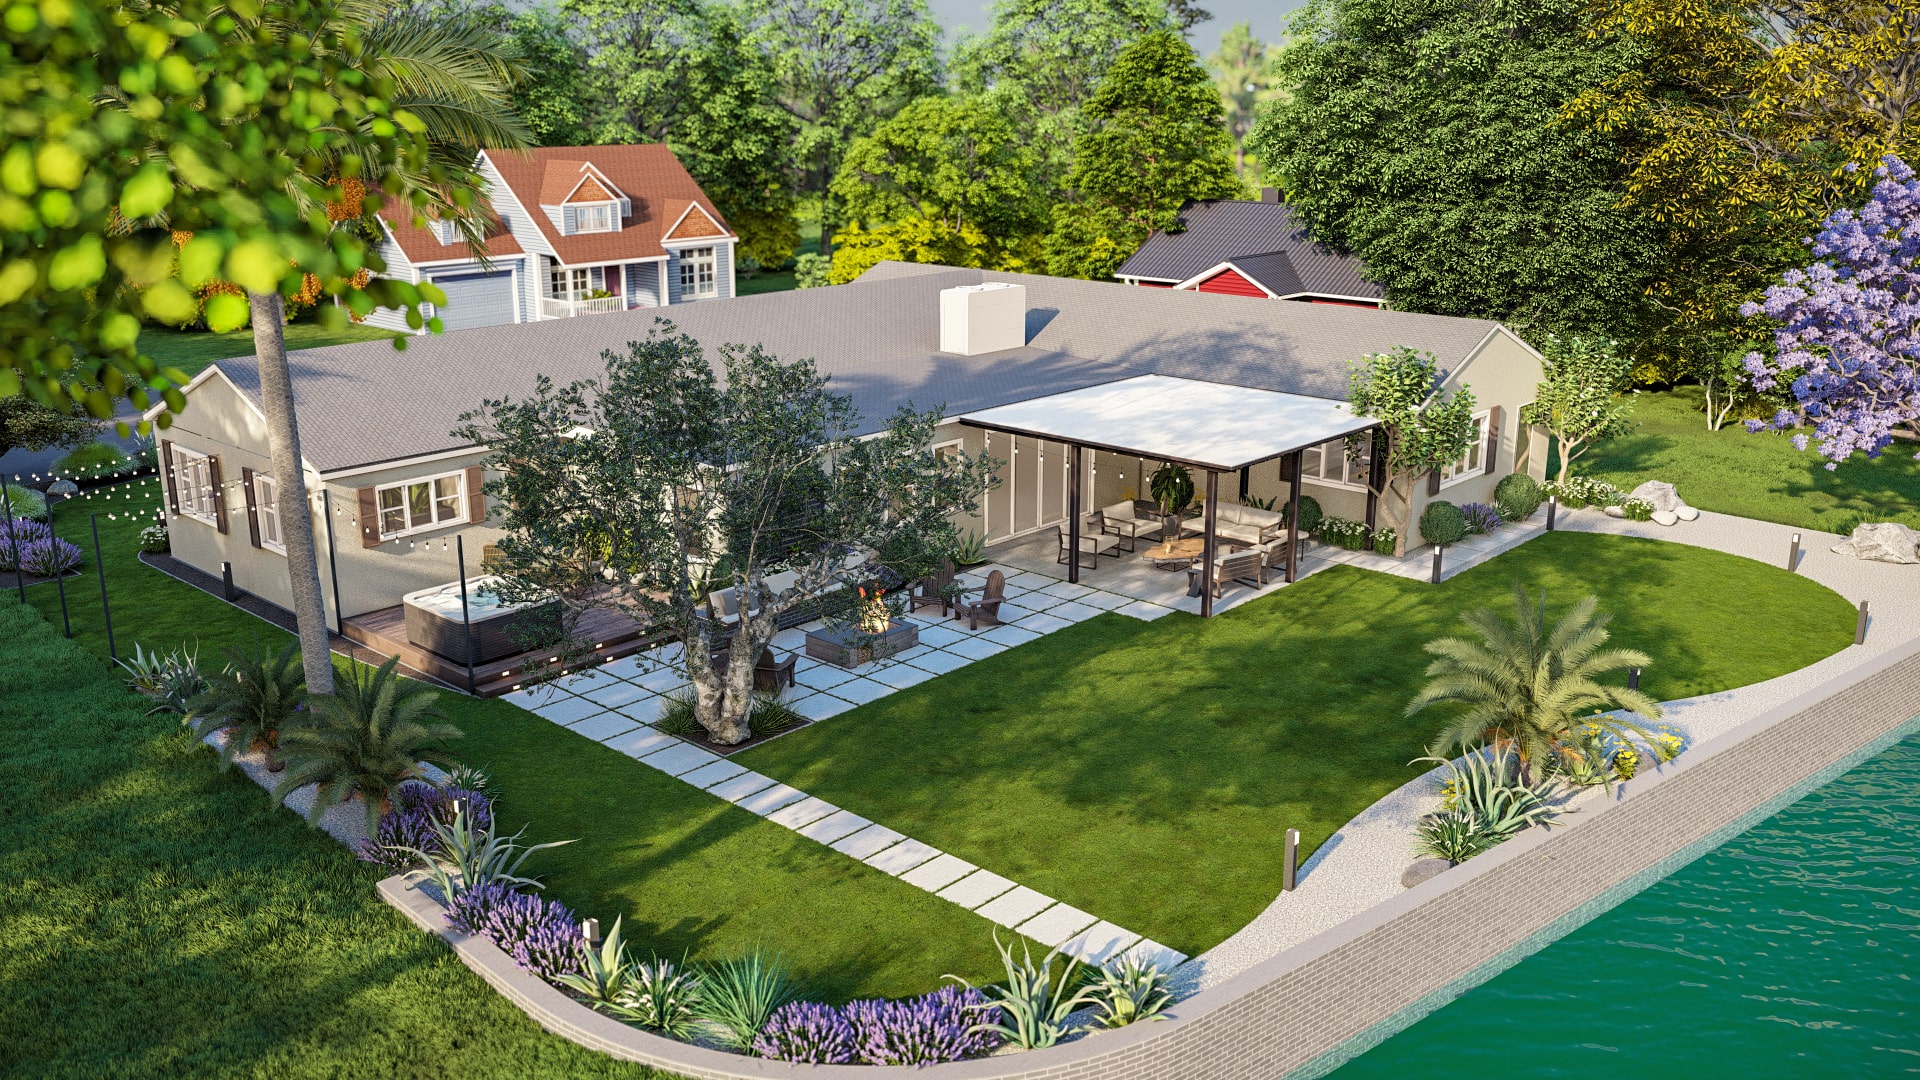 Homely Design-aerial-view-lakeside-home-backyard-patio-garden